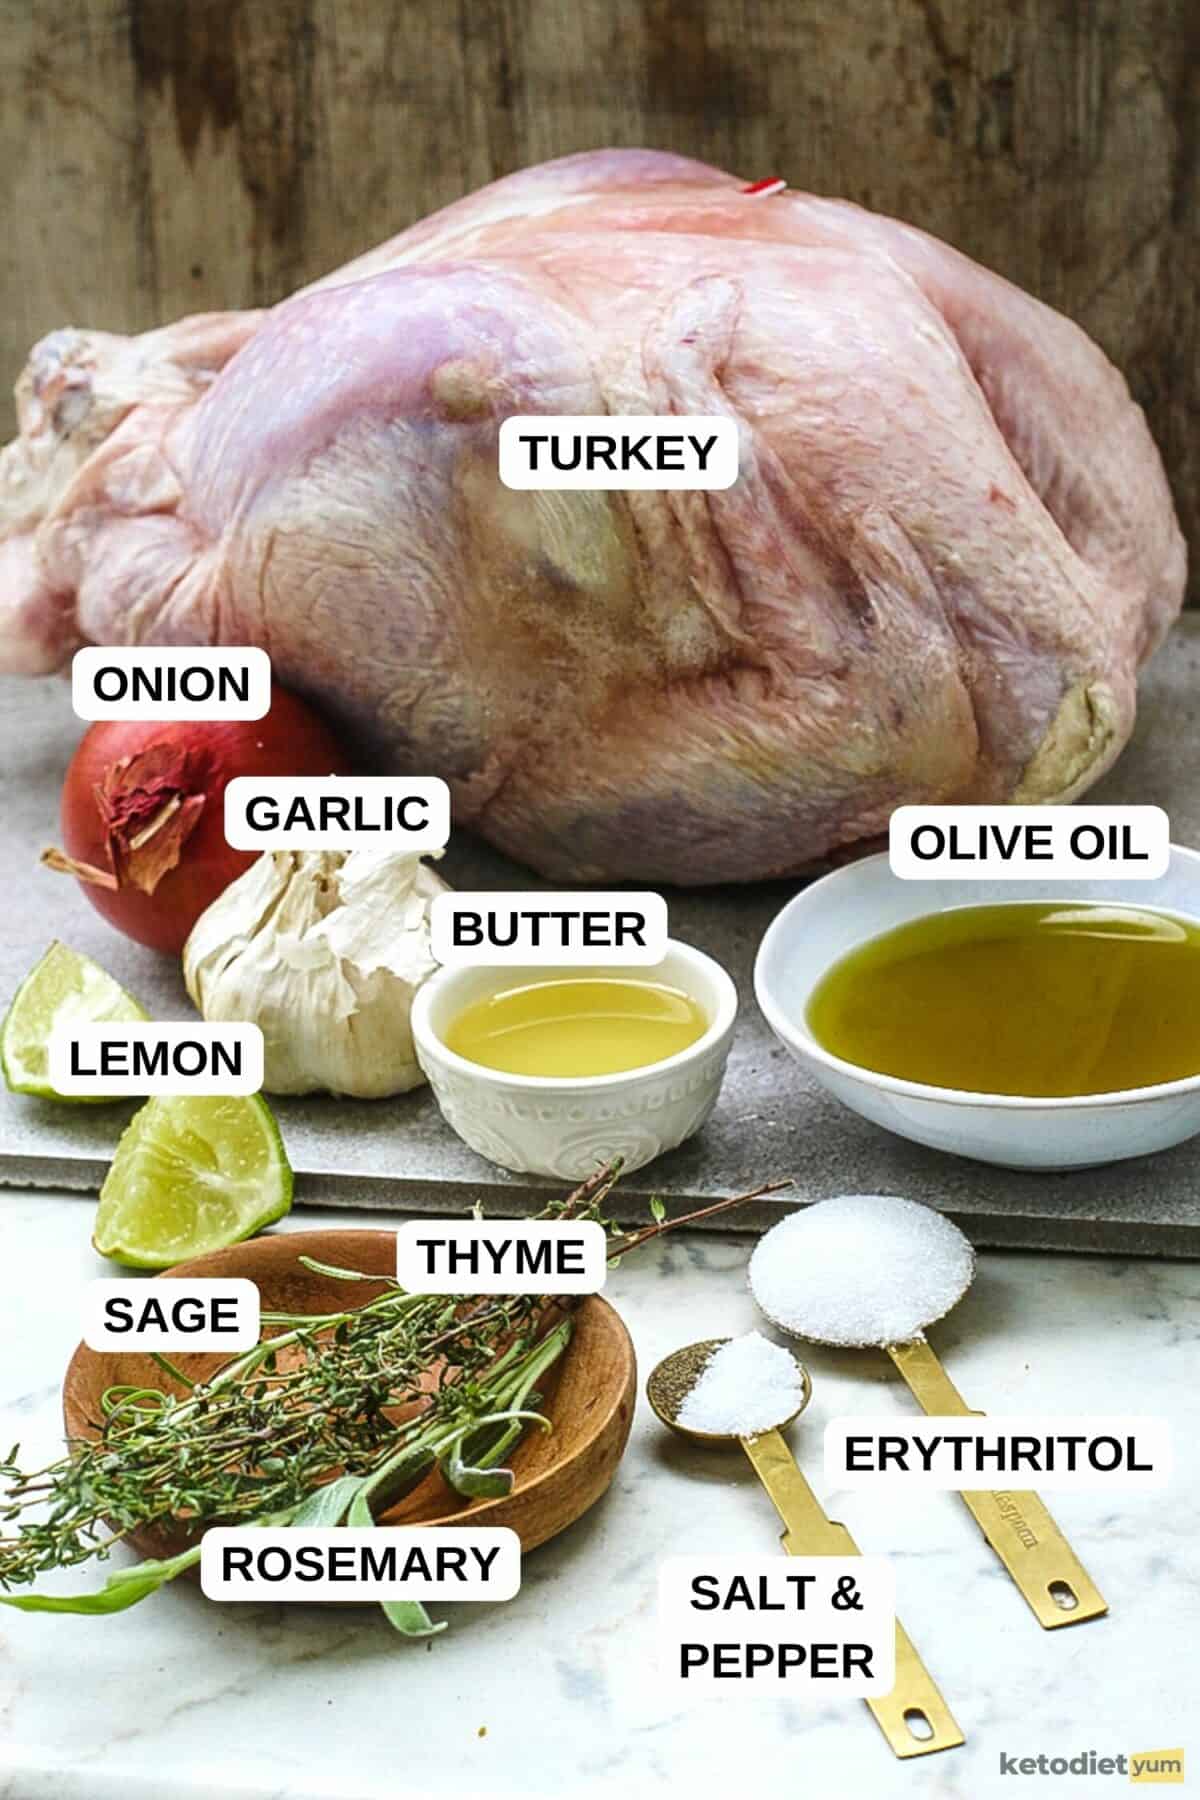 Best Keto Roast Turkey Recipe Ingredients